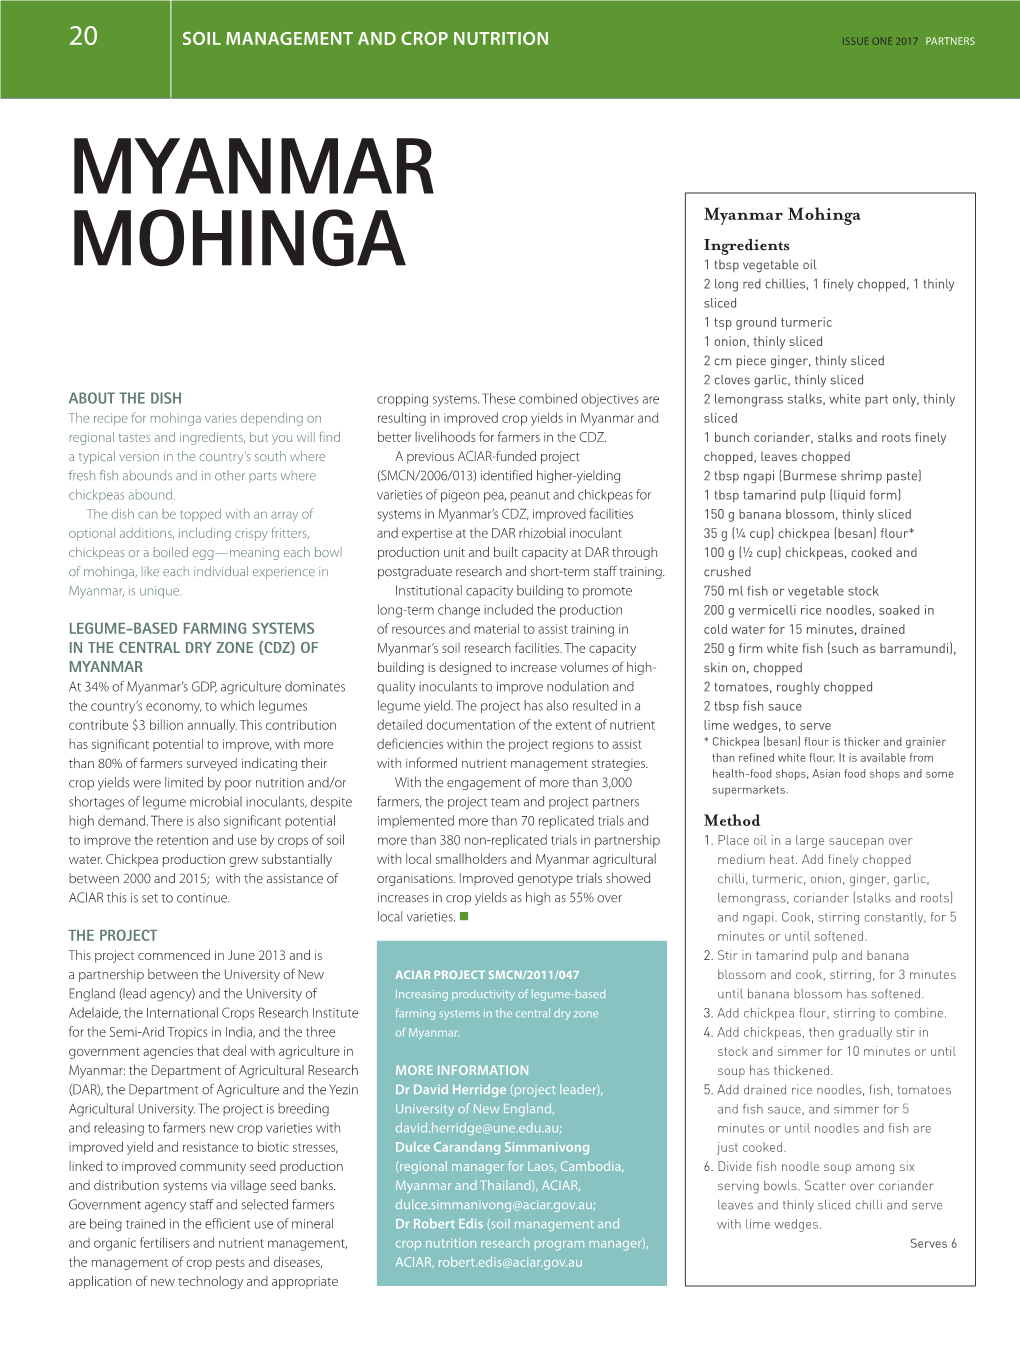 Myanmar Mohinga